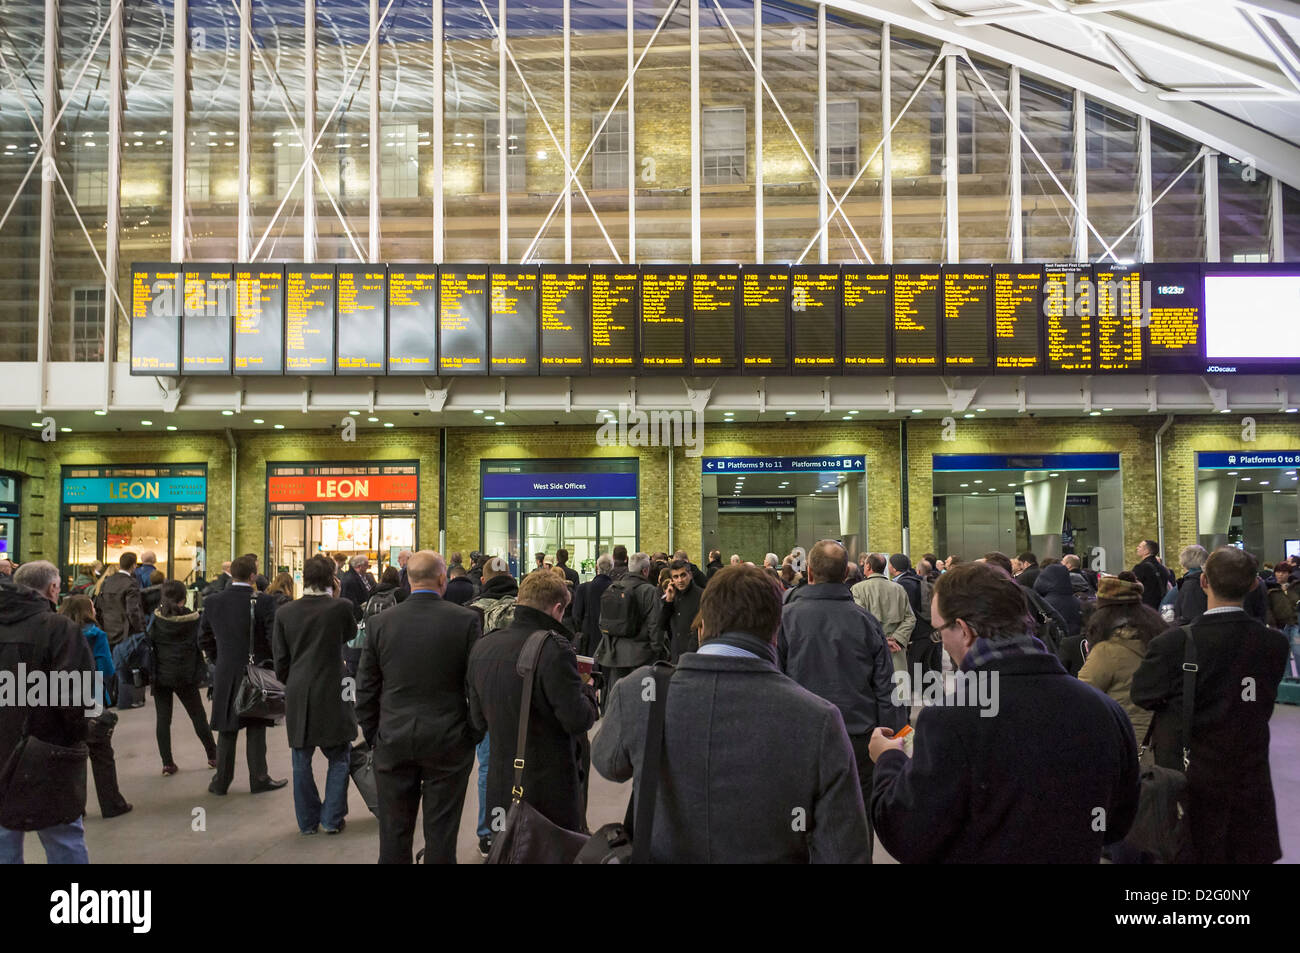 Les banlieusards de gens étudient les conseils de départ plein d'annulations retards des trains à la gare de Kings Cross, London, UK dans l'heure de pointe Banque D'Images